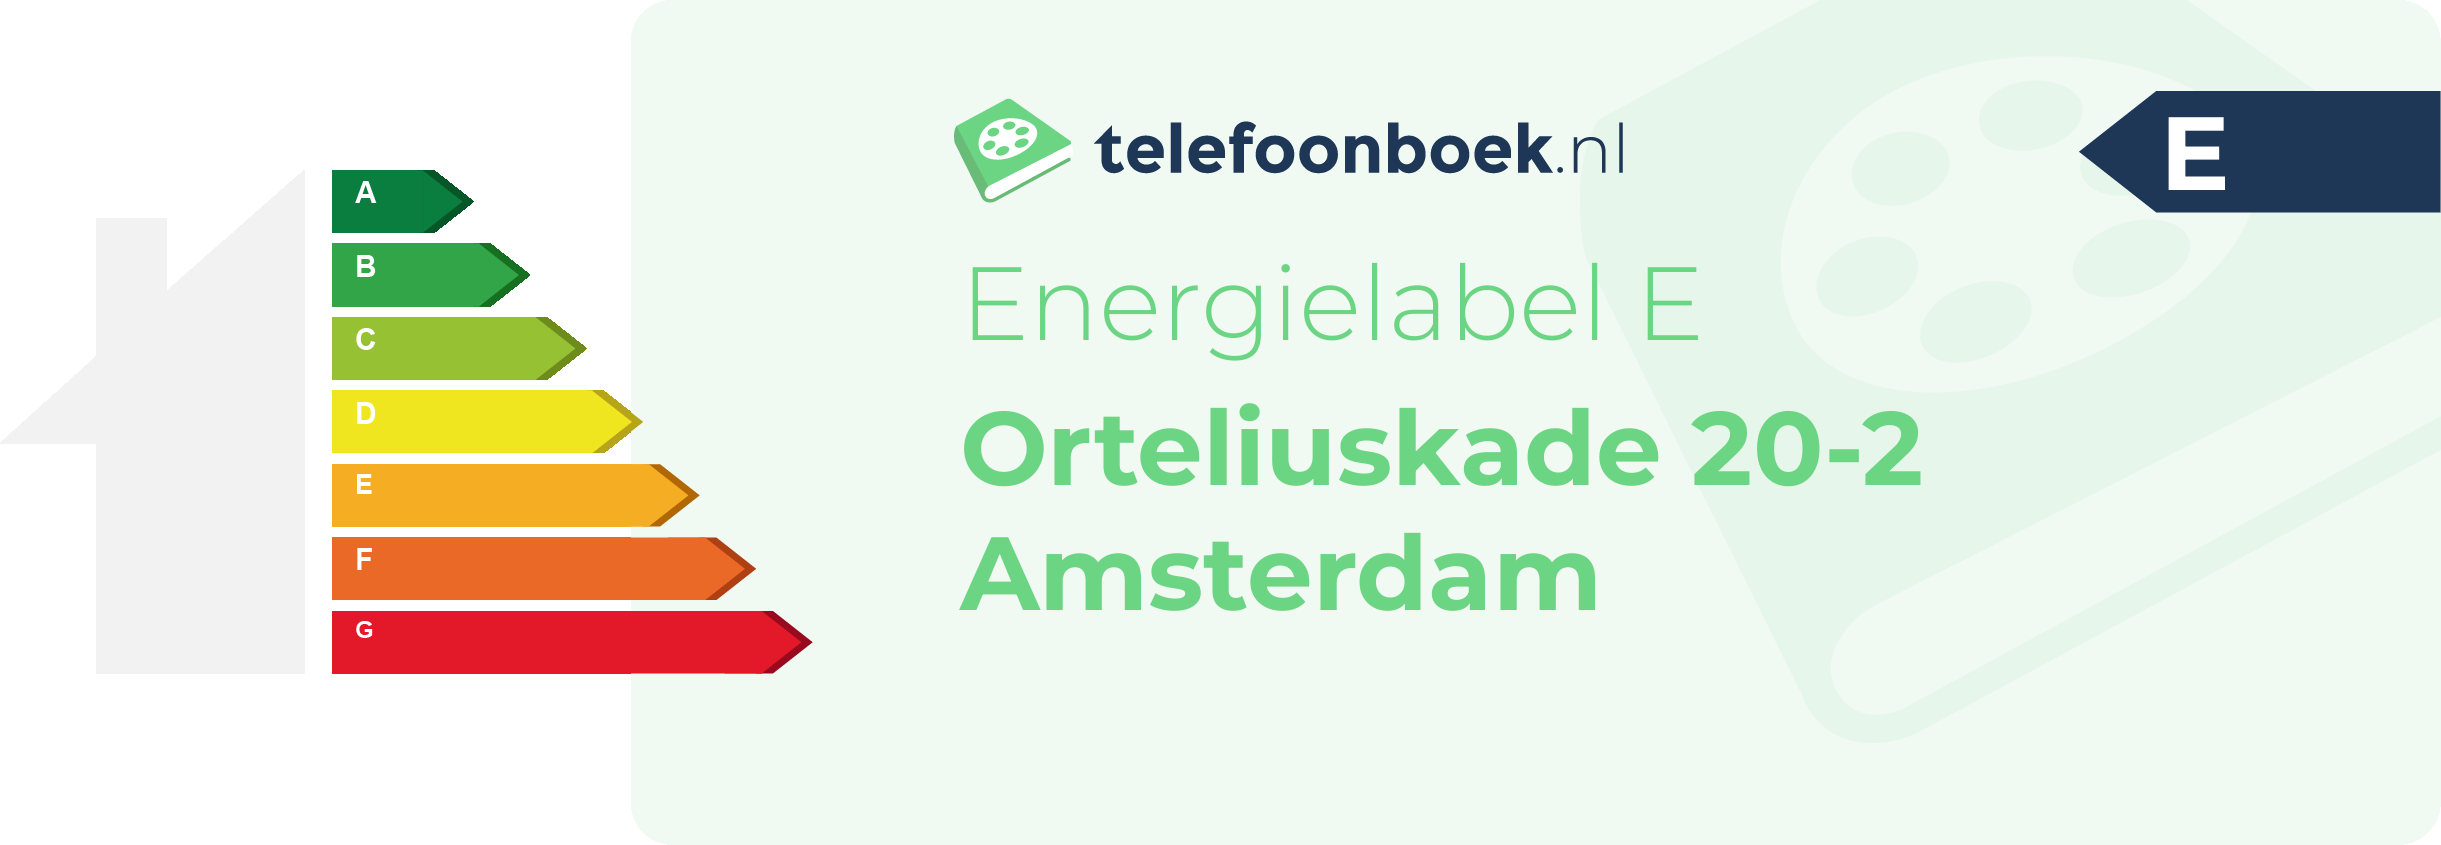 Energielabel Orteliuskade 20-2 Amsterdam